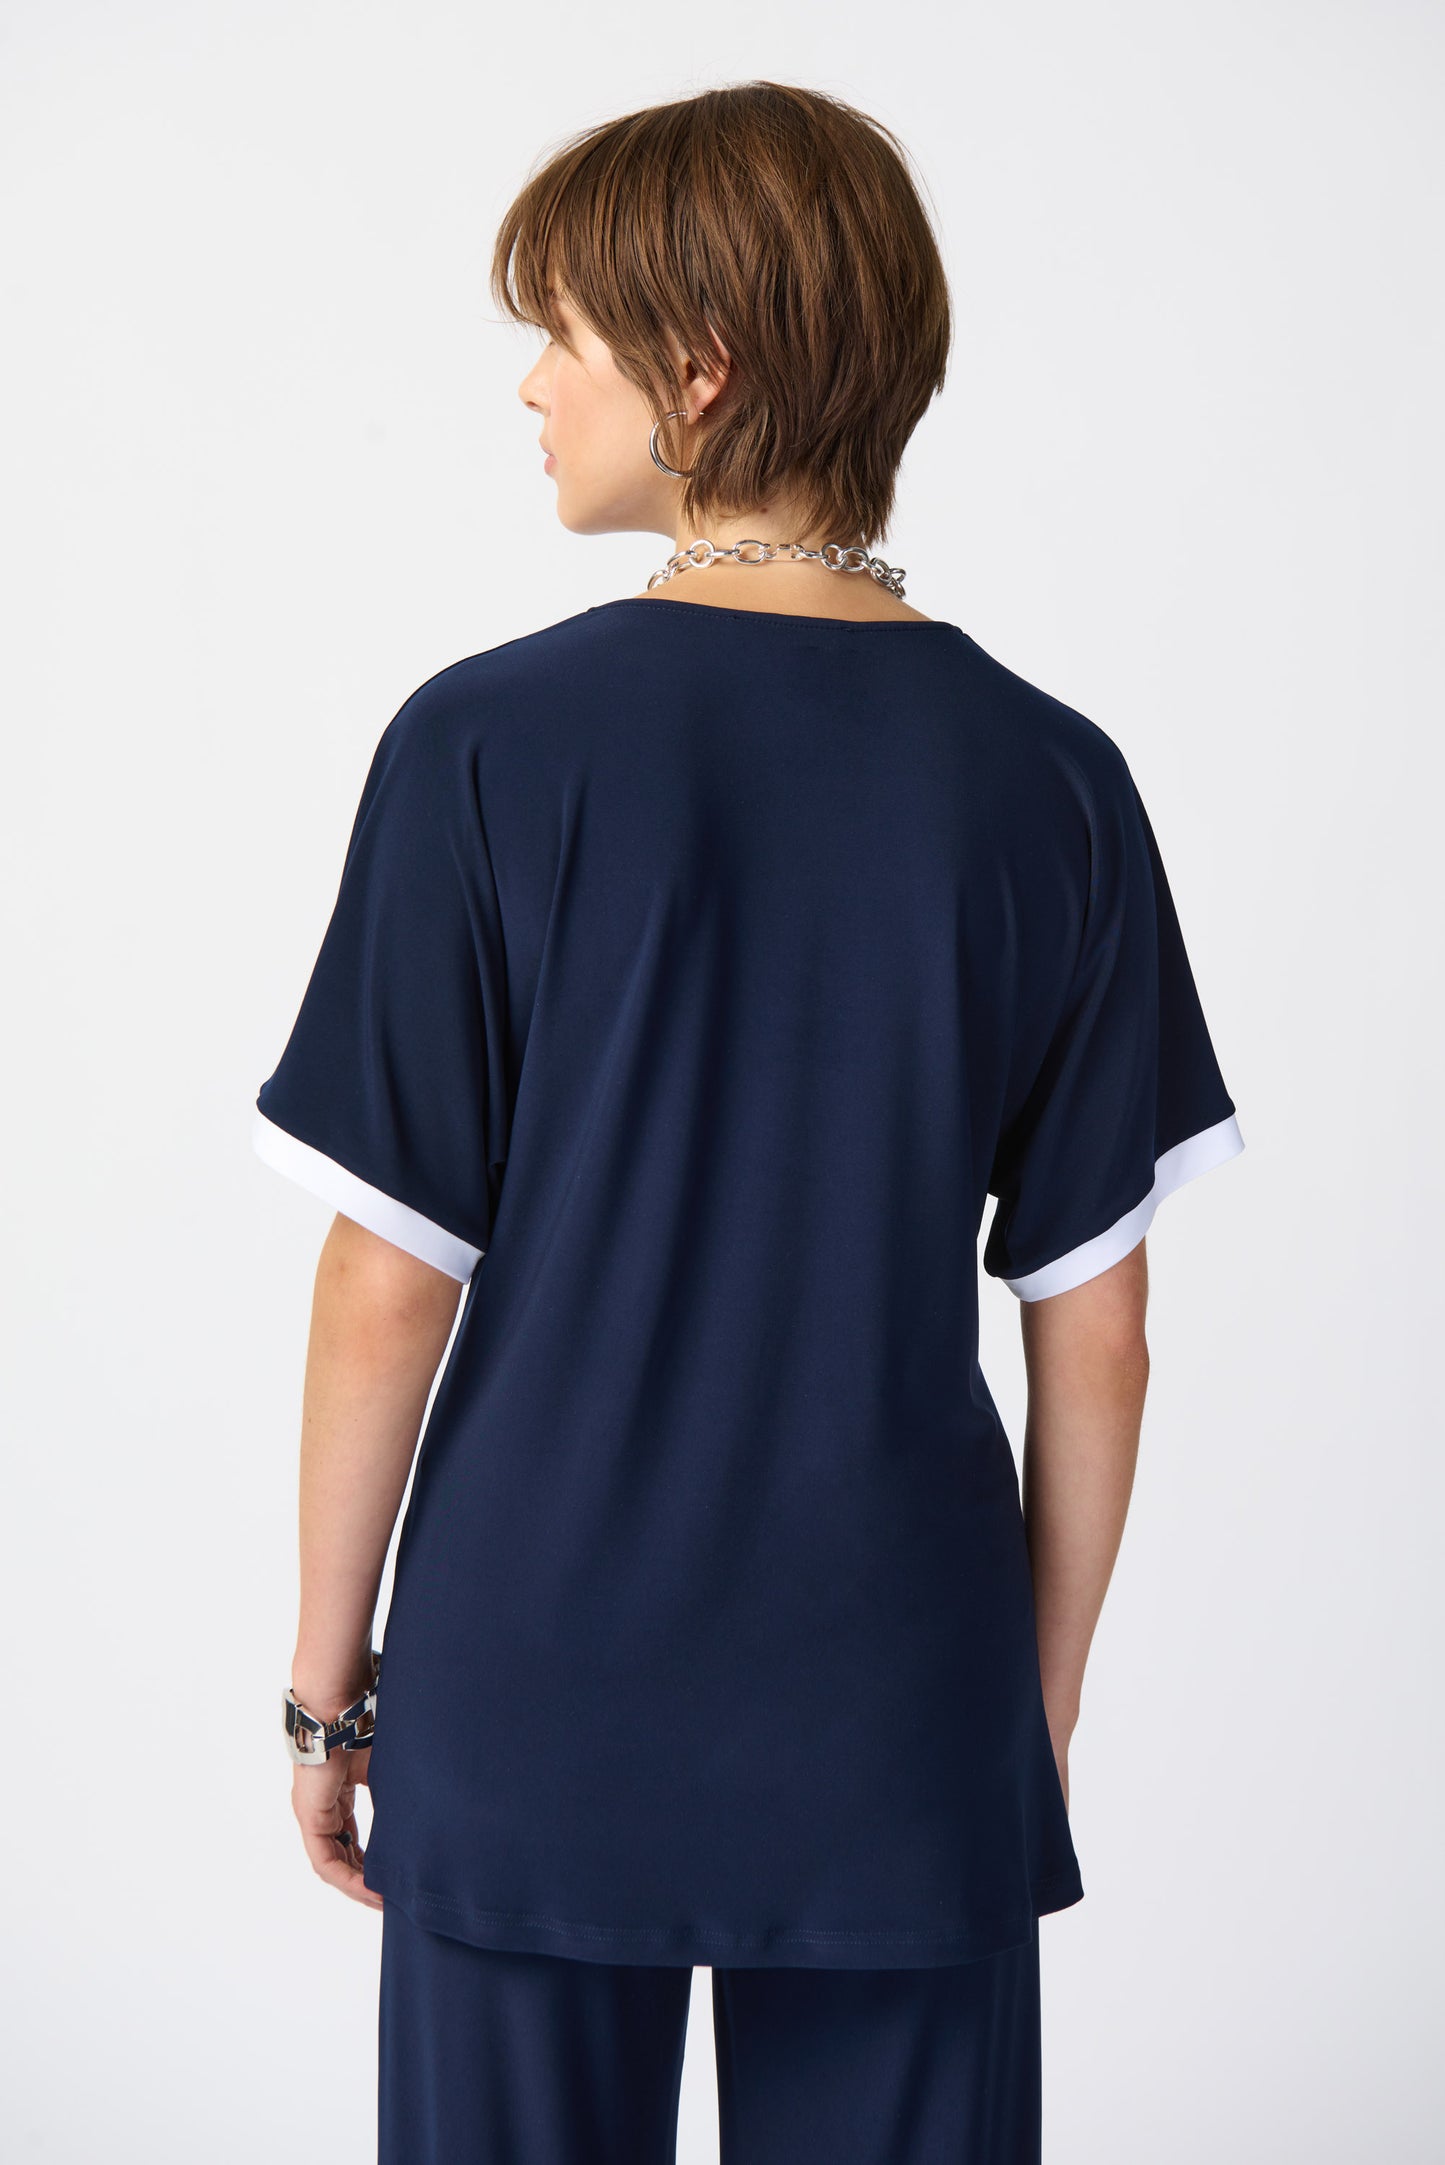 Blusa con bloques de color azul marino y vainilla 241279